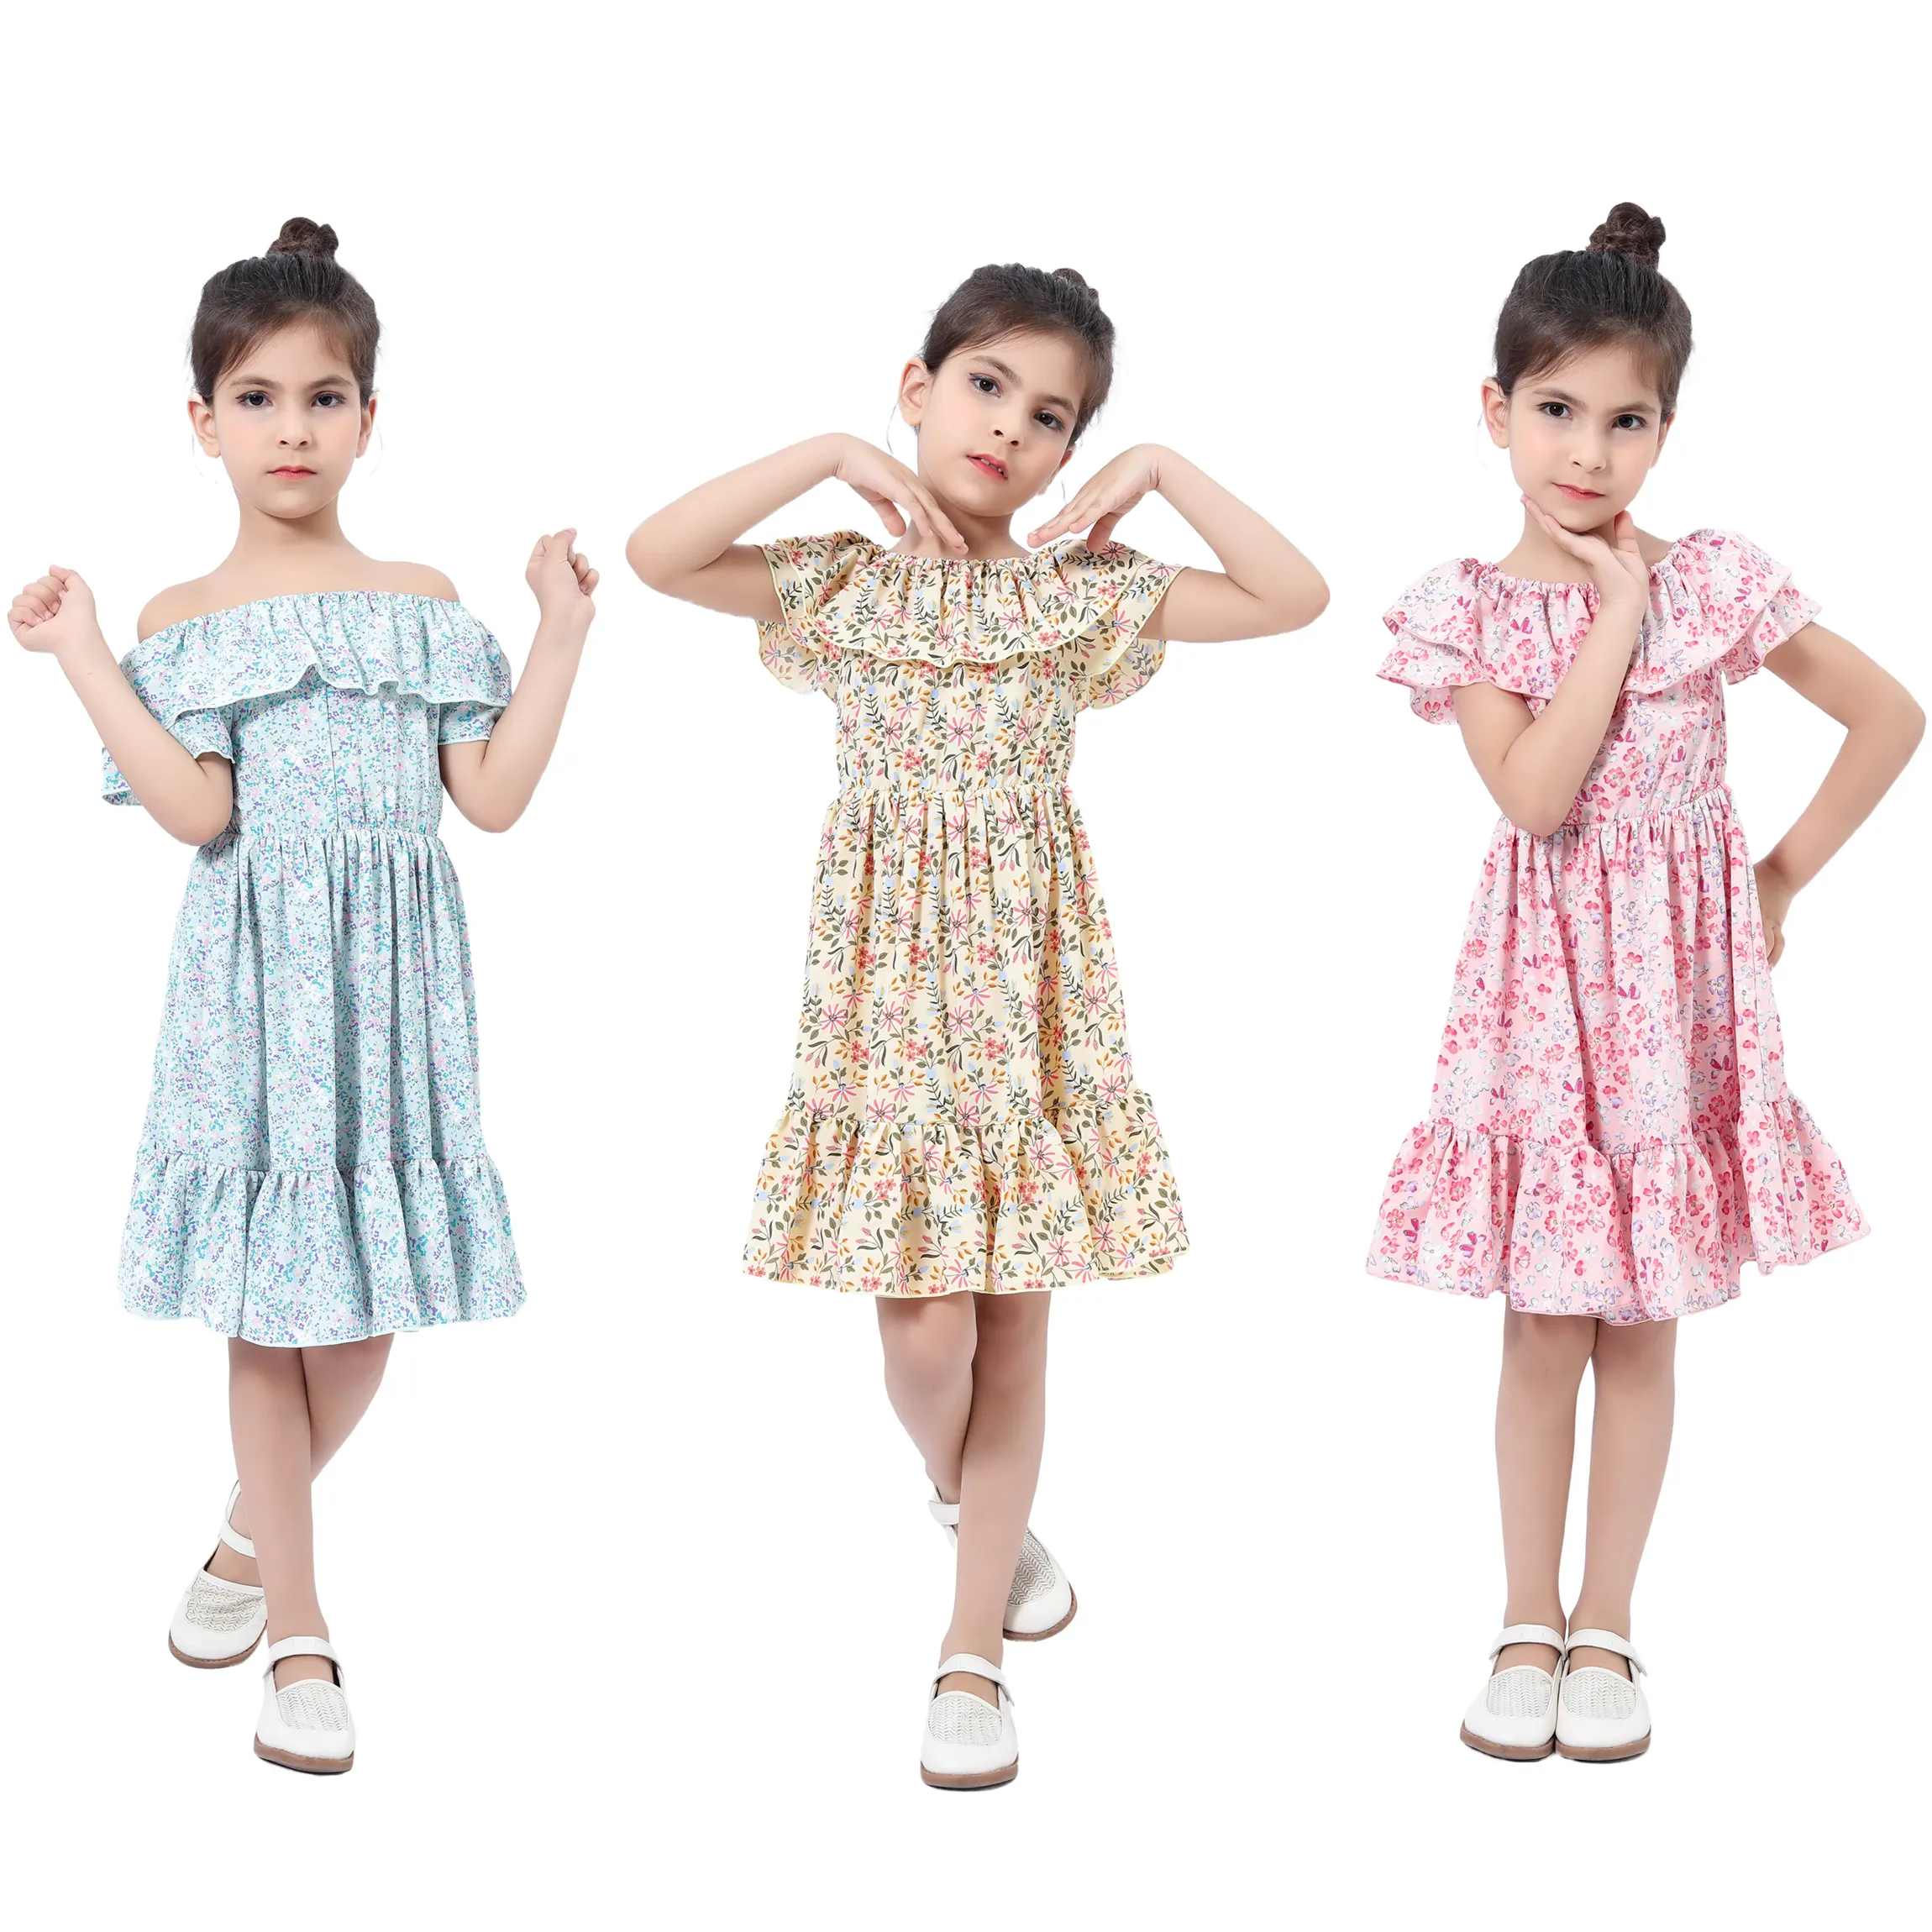 New Design 2-10T Kids Clothing Spring Summer Off Shoulder Floral Print Casual Girls Dresses